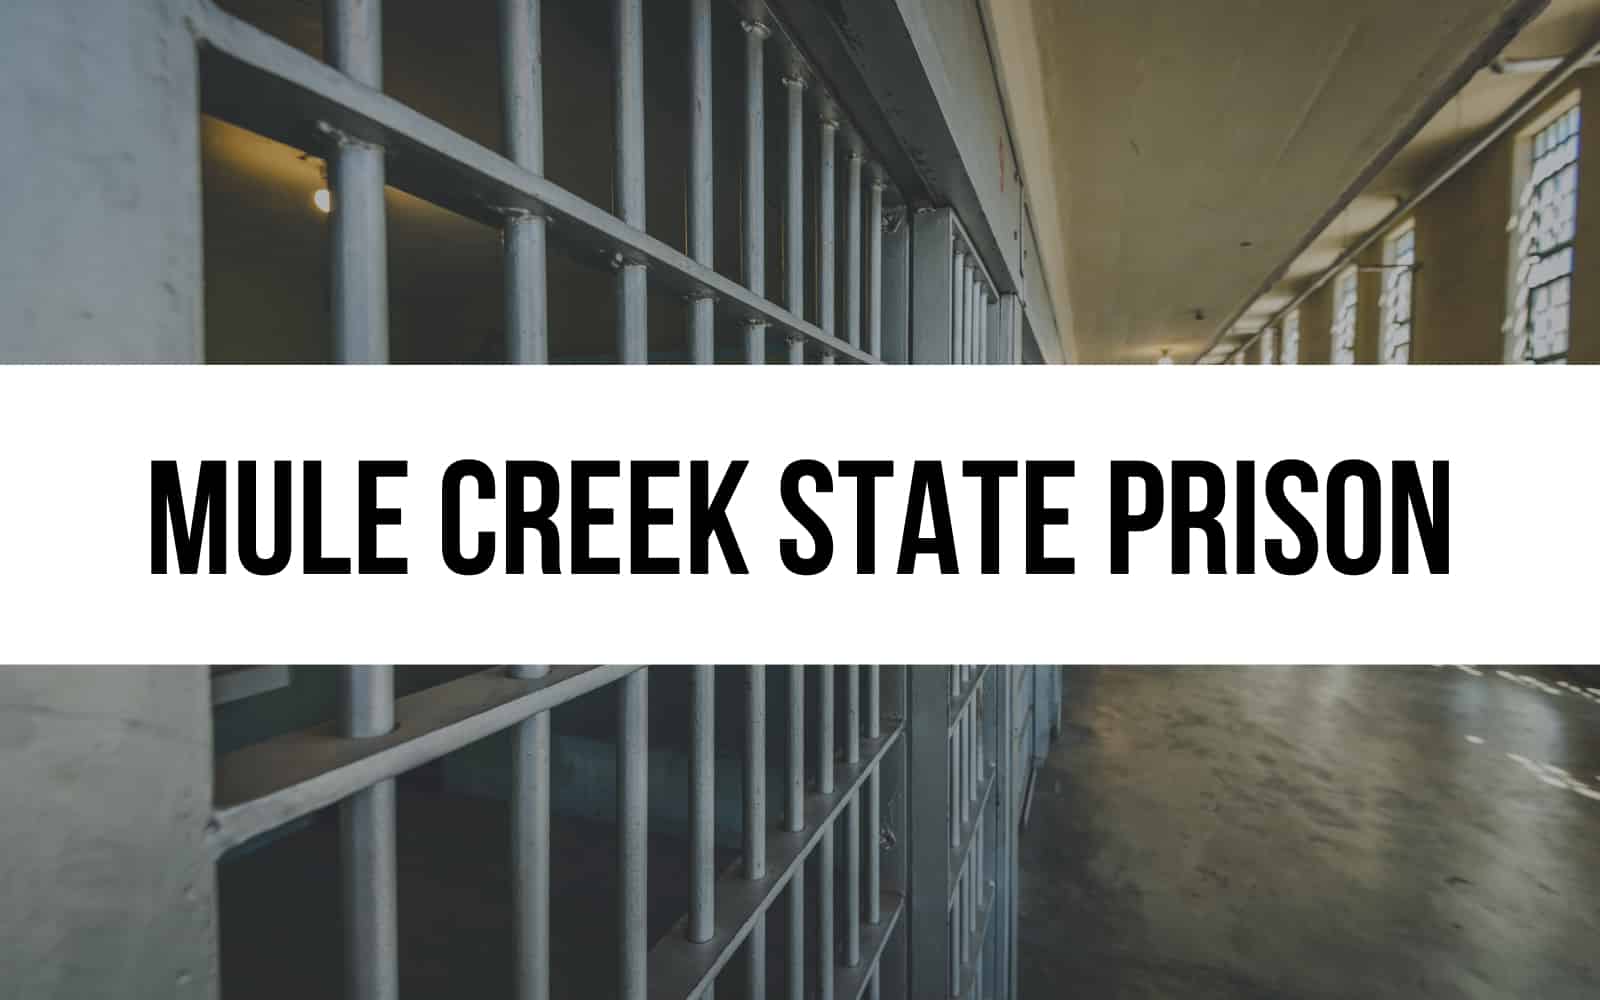 Mule Creek State Prison